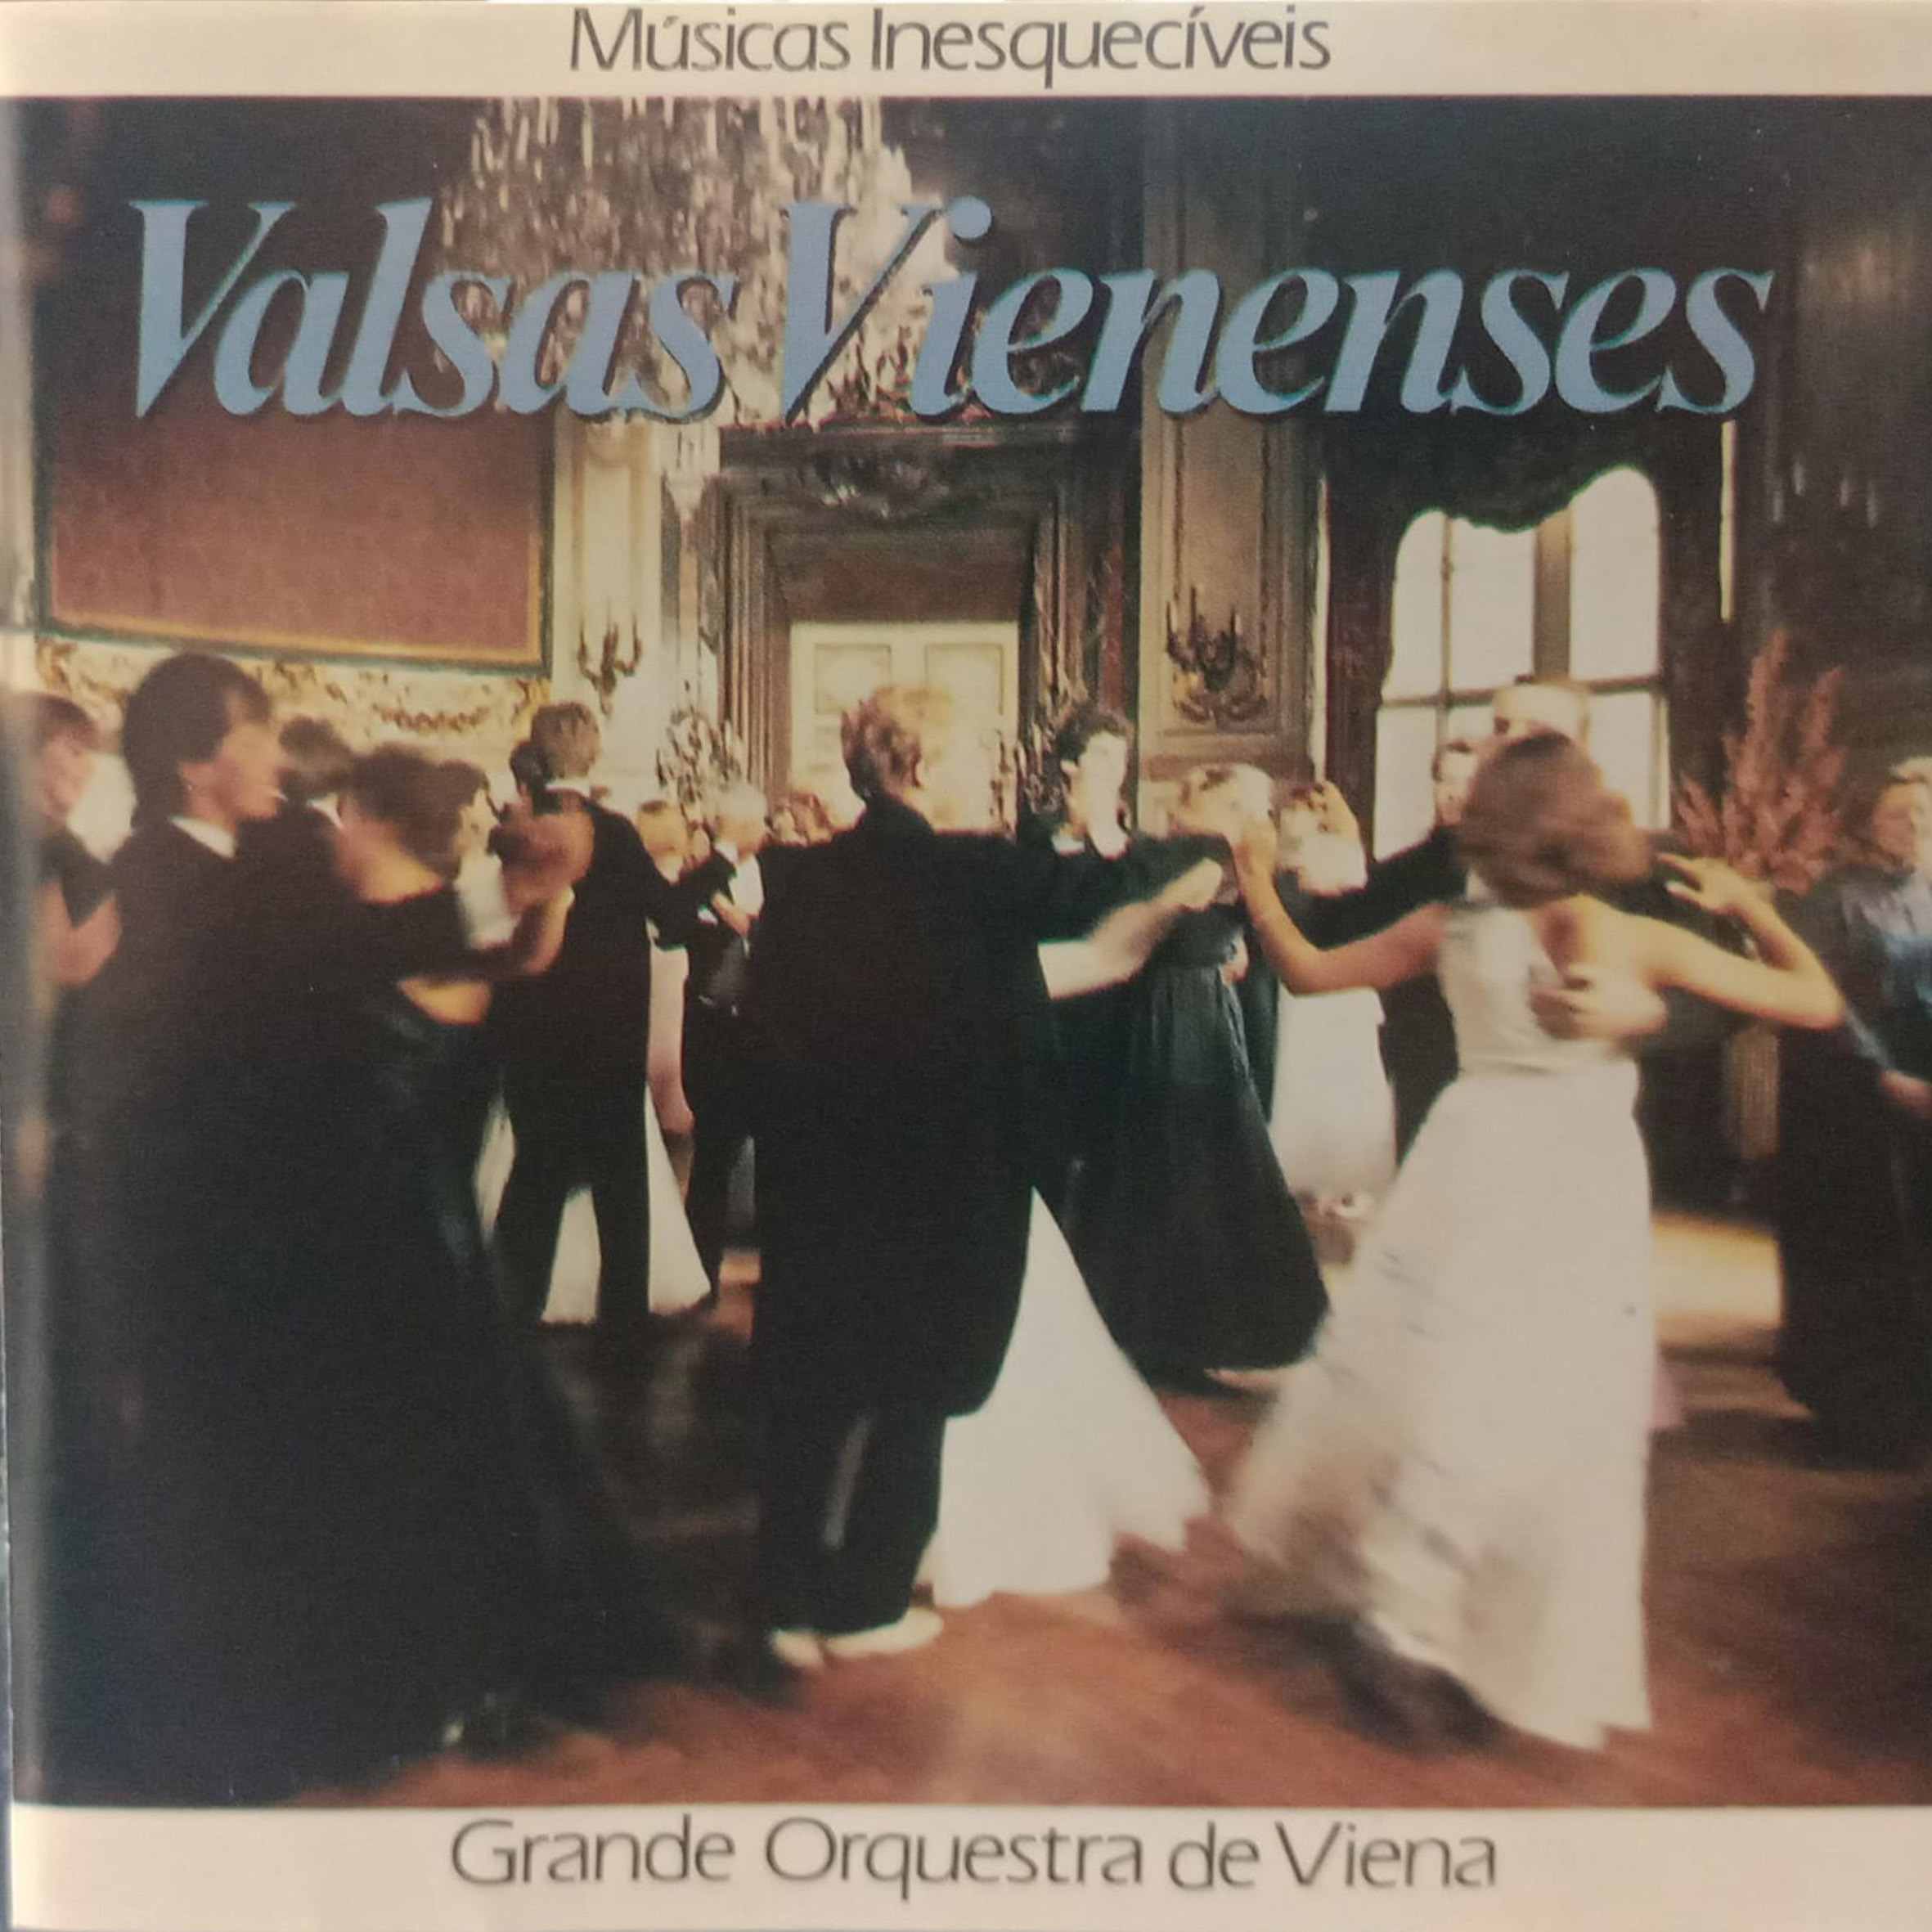 CD - Grande Orquestra de Viena - Valsas Vienenses